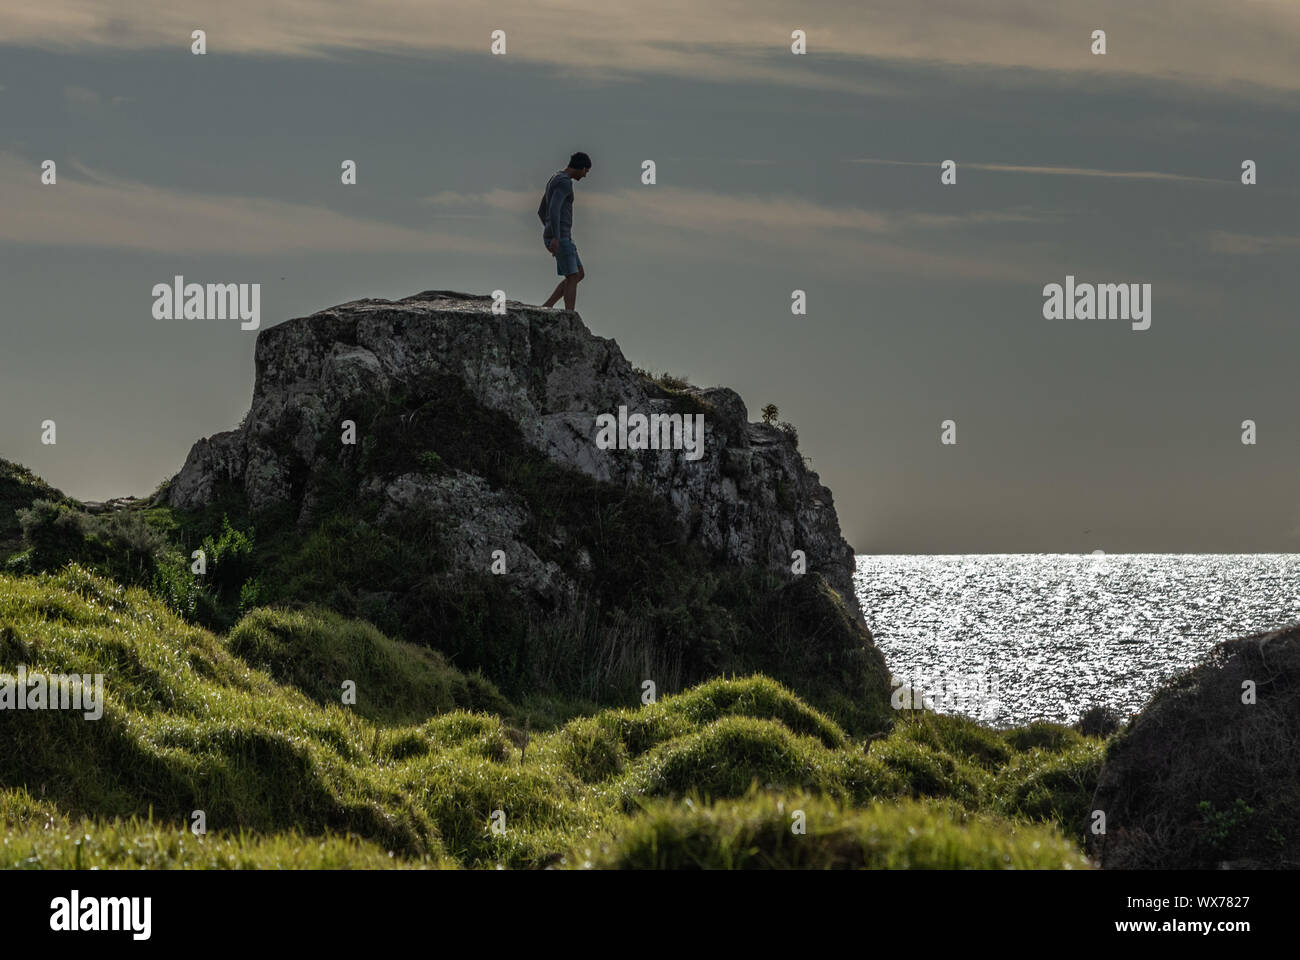 Man standing on rock overlooking ocean Stock Photo